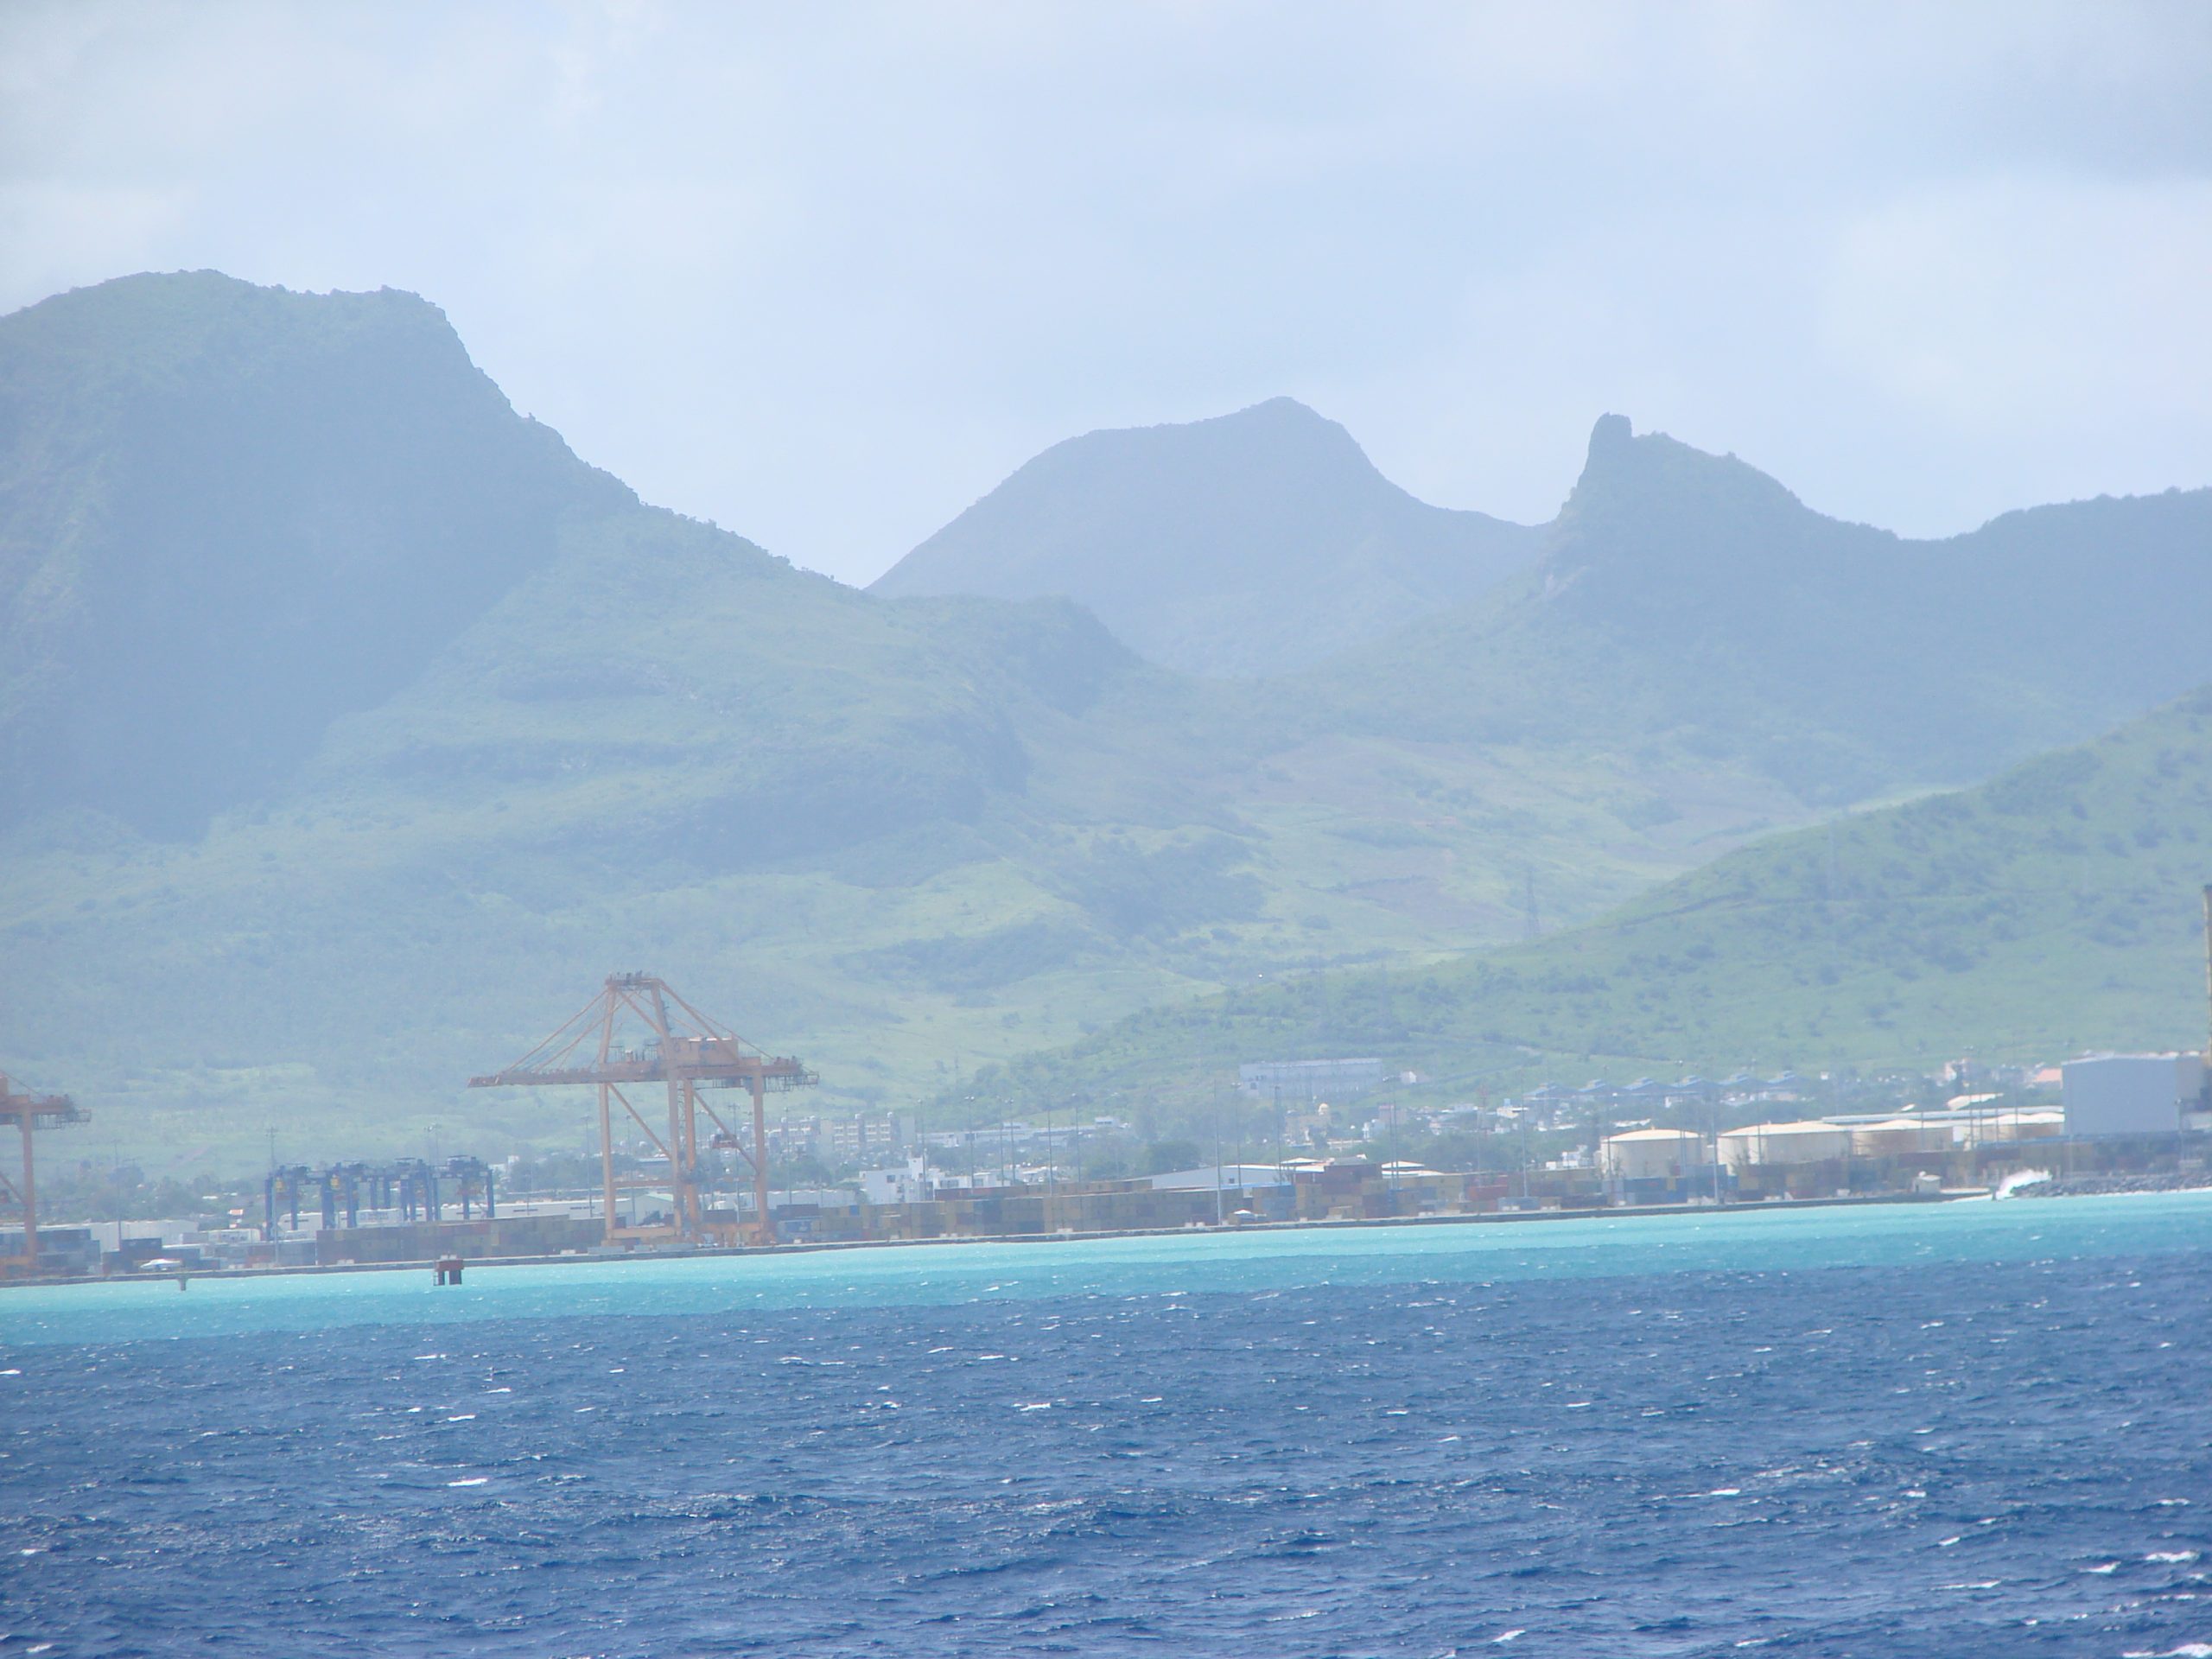 Mauritius on maailman 14. pahin yritysverokeidas.